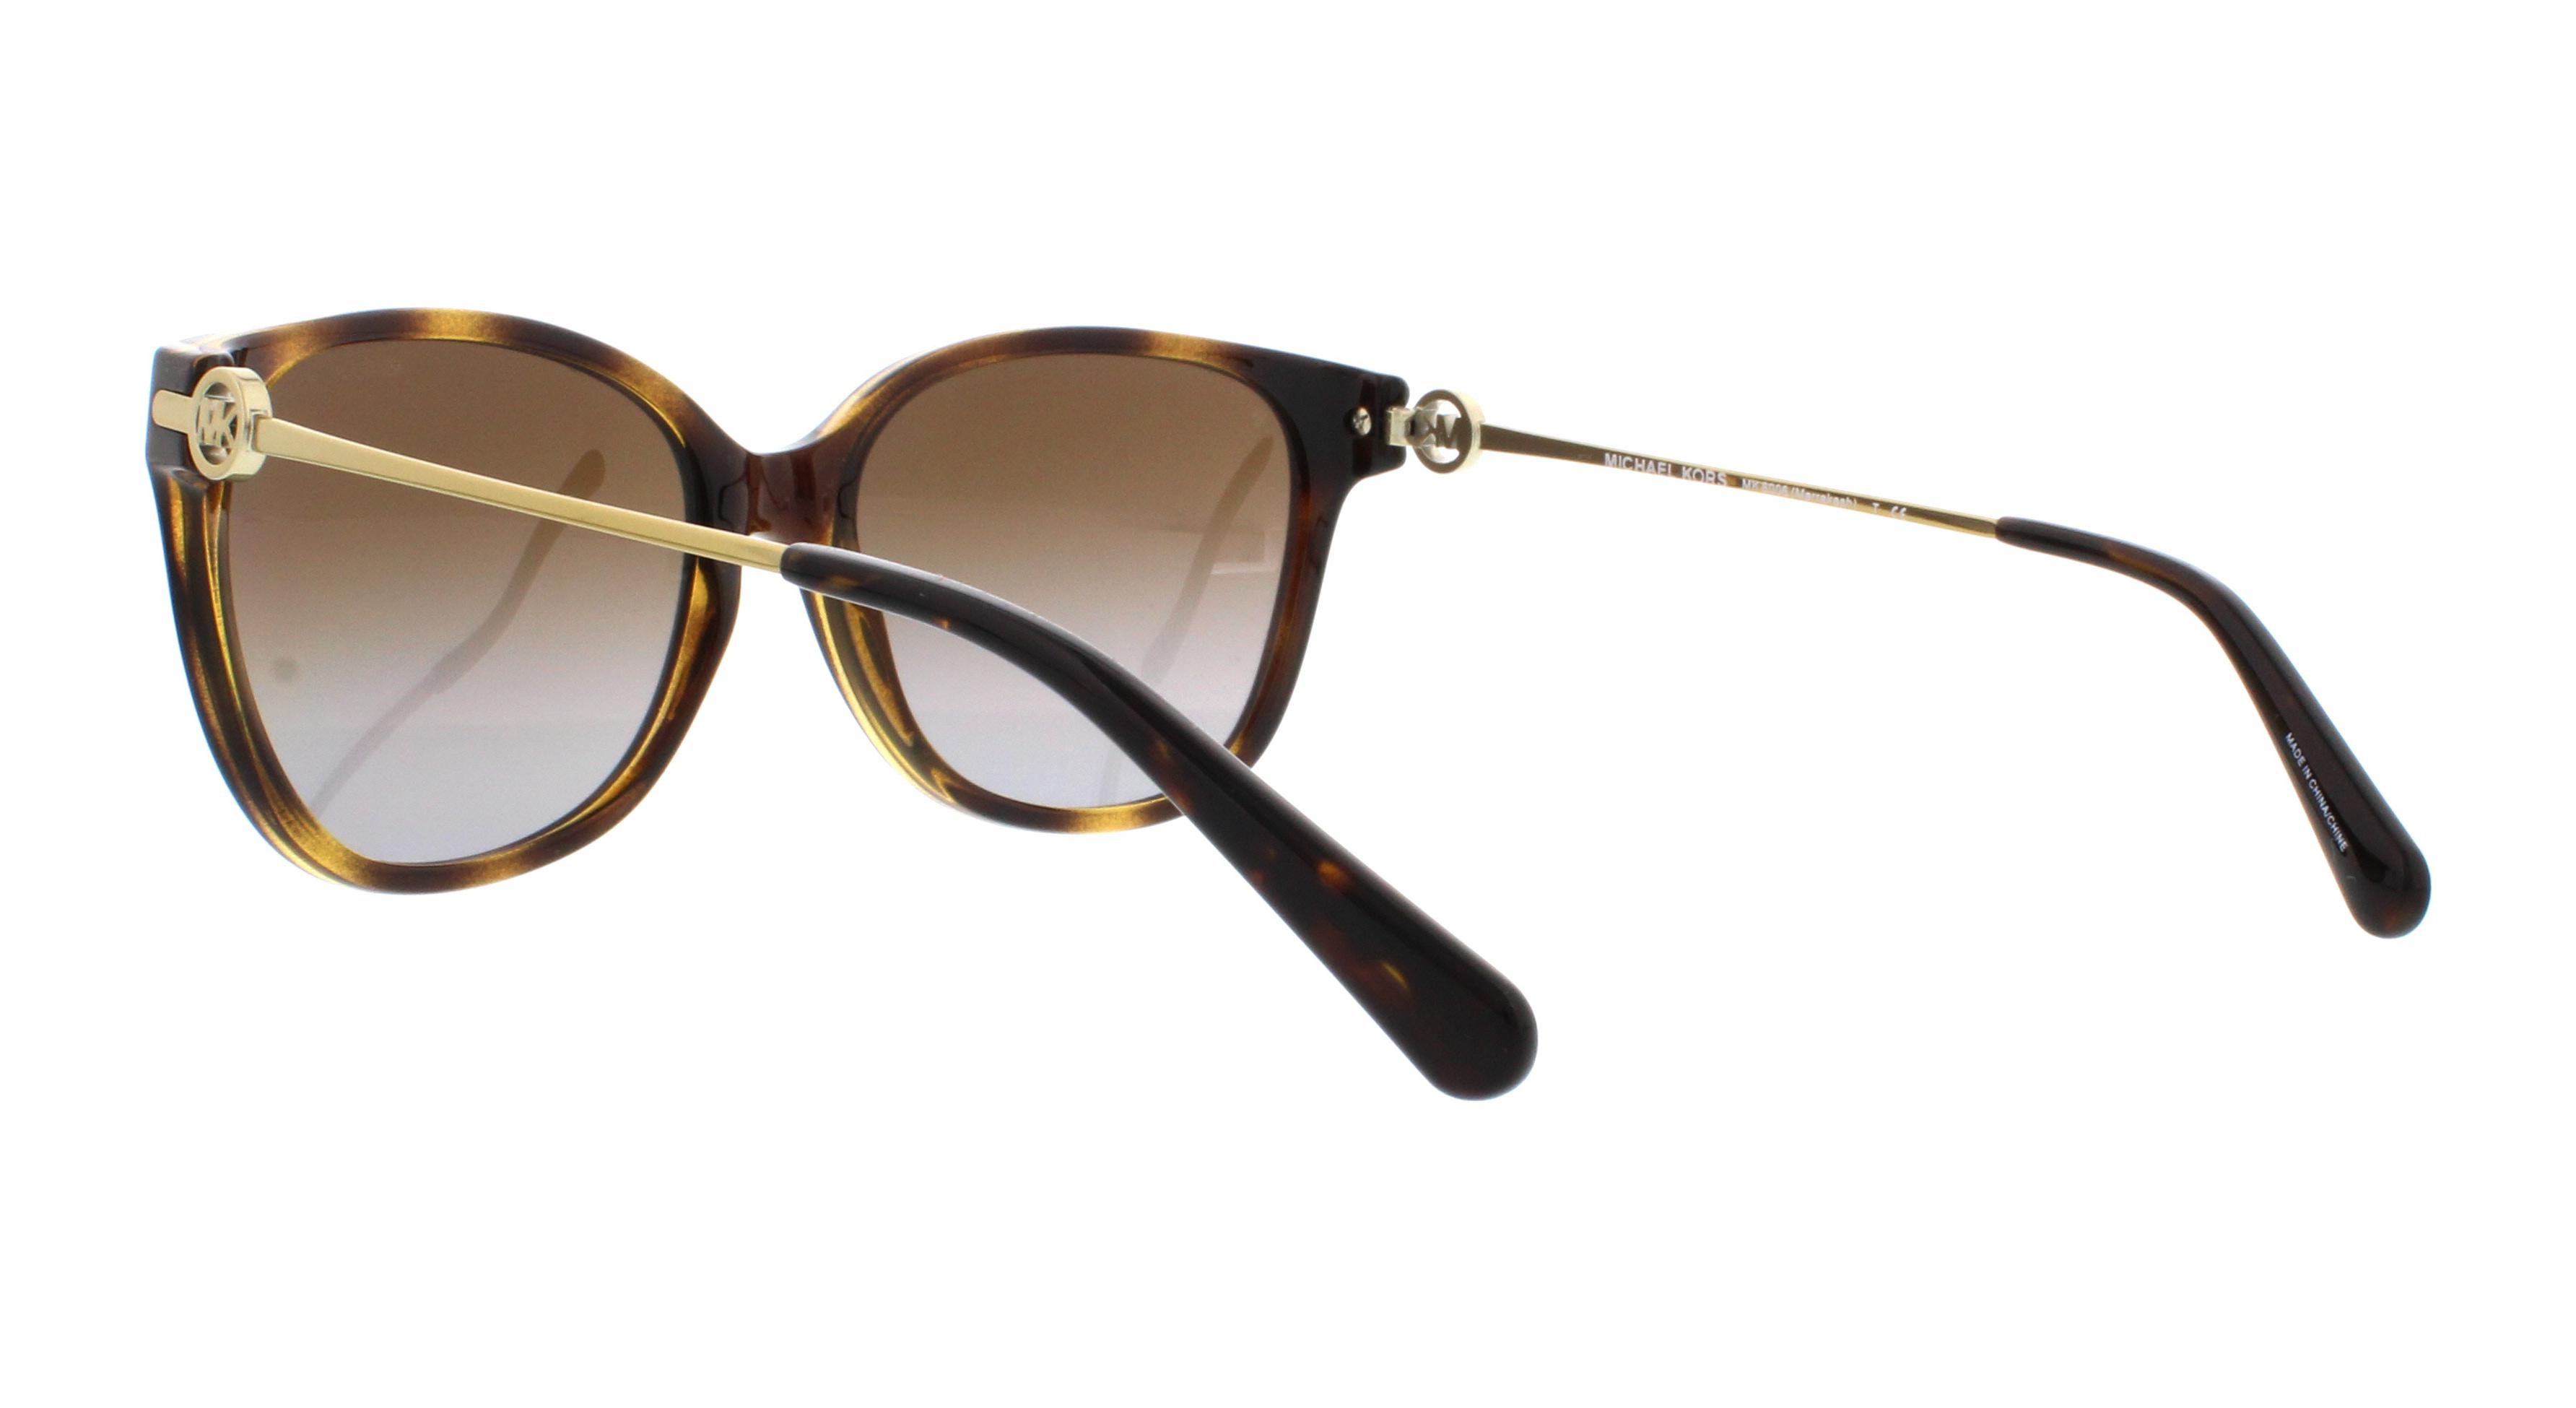 Designer Frames Outlet. Michael Kors Sunglasses MK6006 Marrakesh